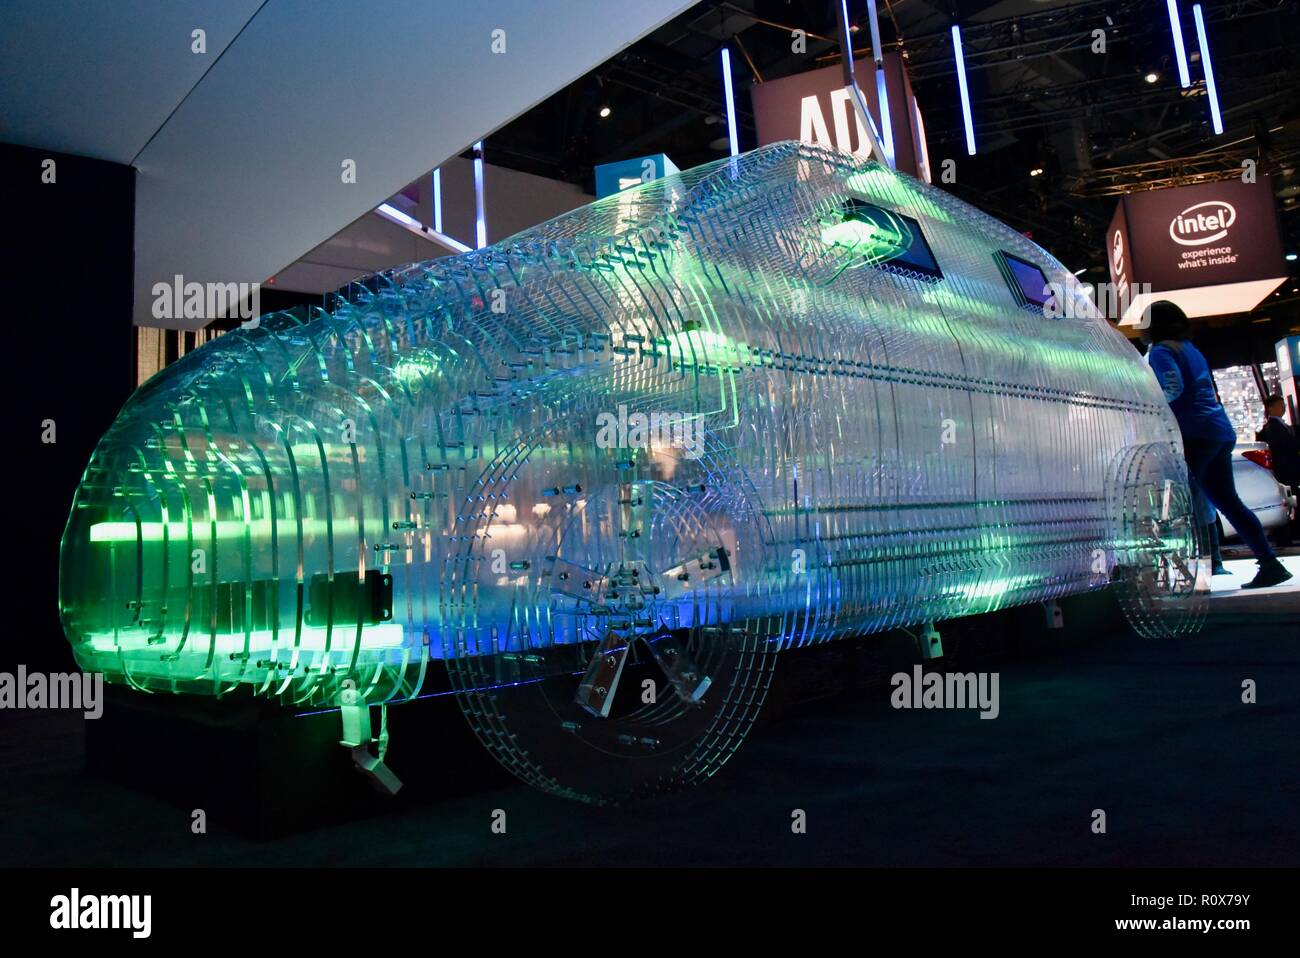 Intel veicolo trasparente vetrine Mobileye, AI,CES (Consumer Electronics Show), il più grande del mondo technology trade show, che si terrà a Las Vegas, Stati Uniti d'America. Foto Stock